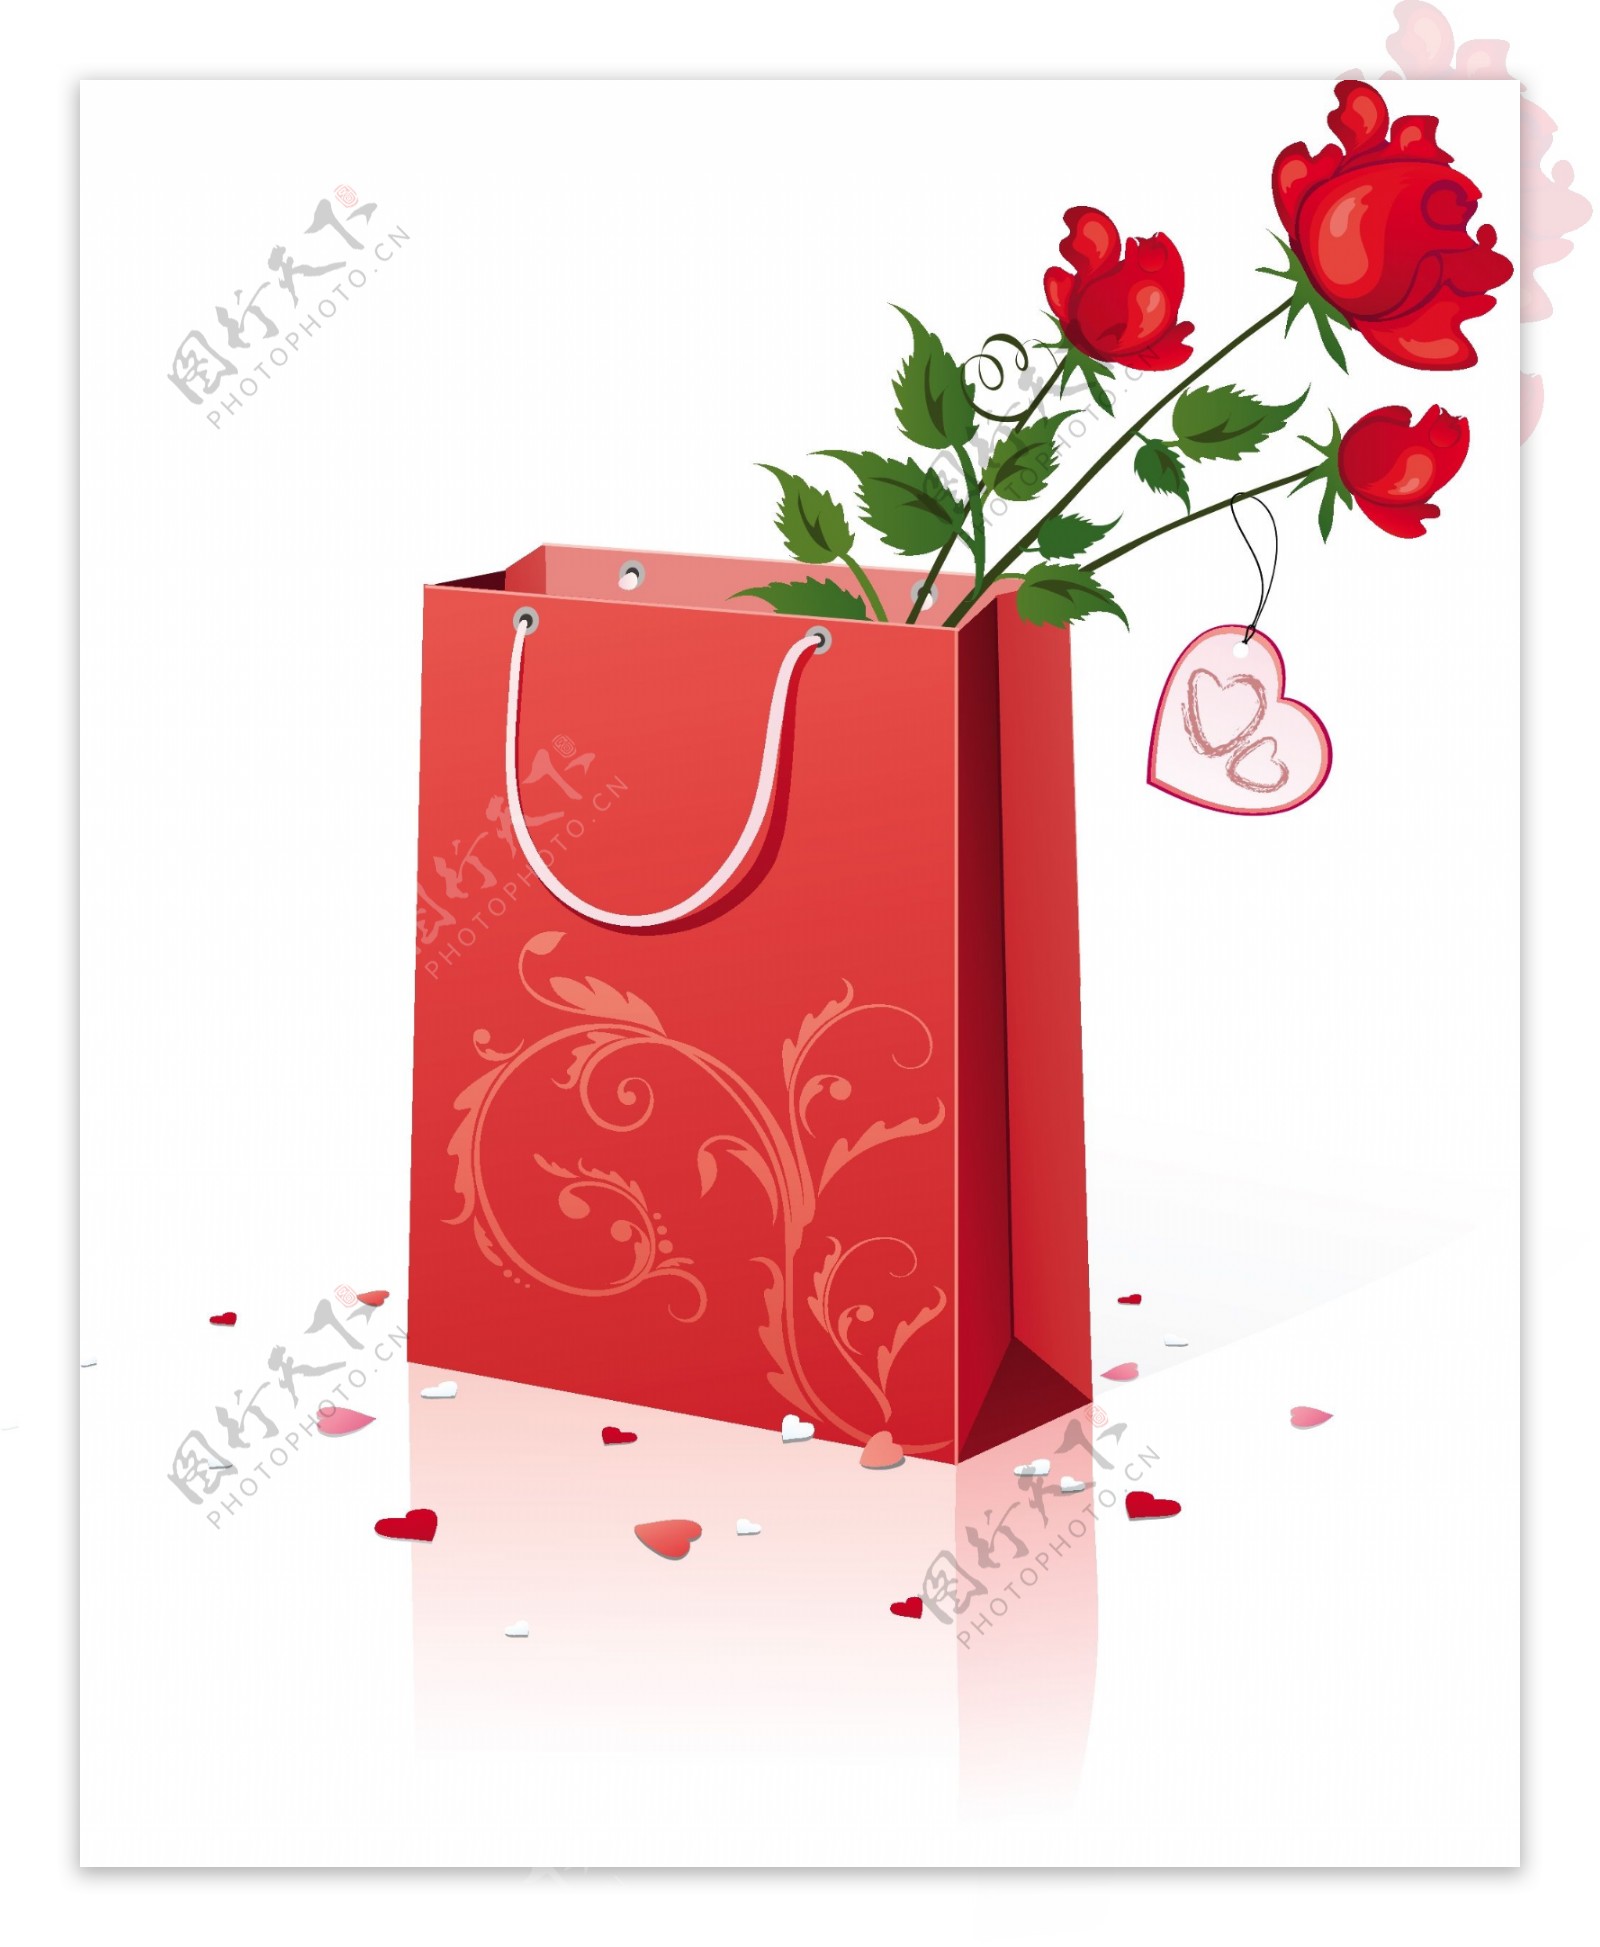 红色玫瑰与礼品袋